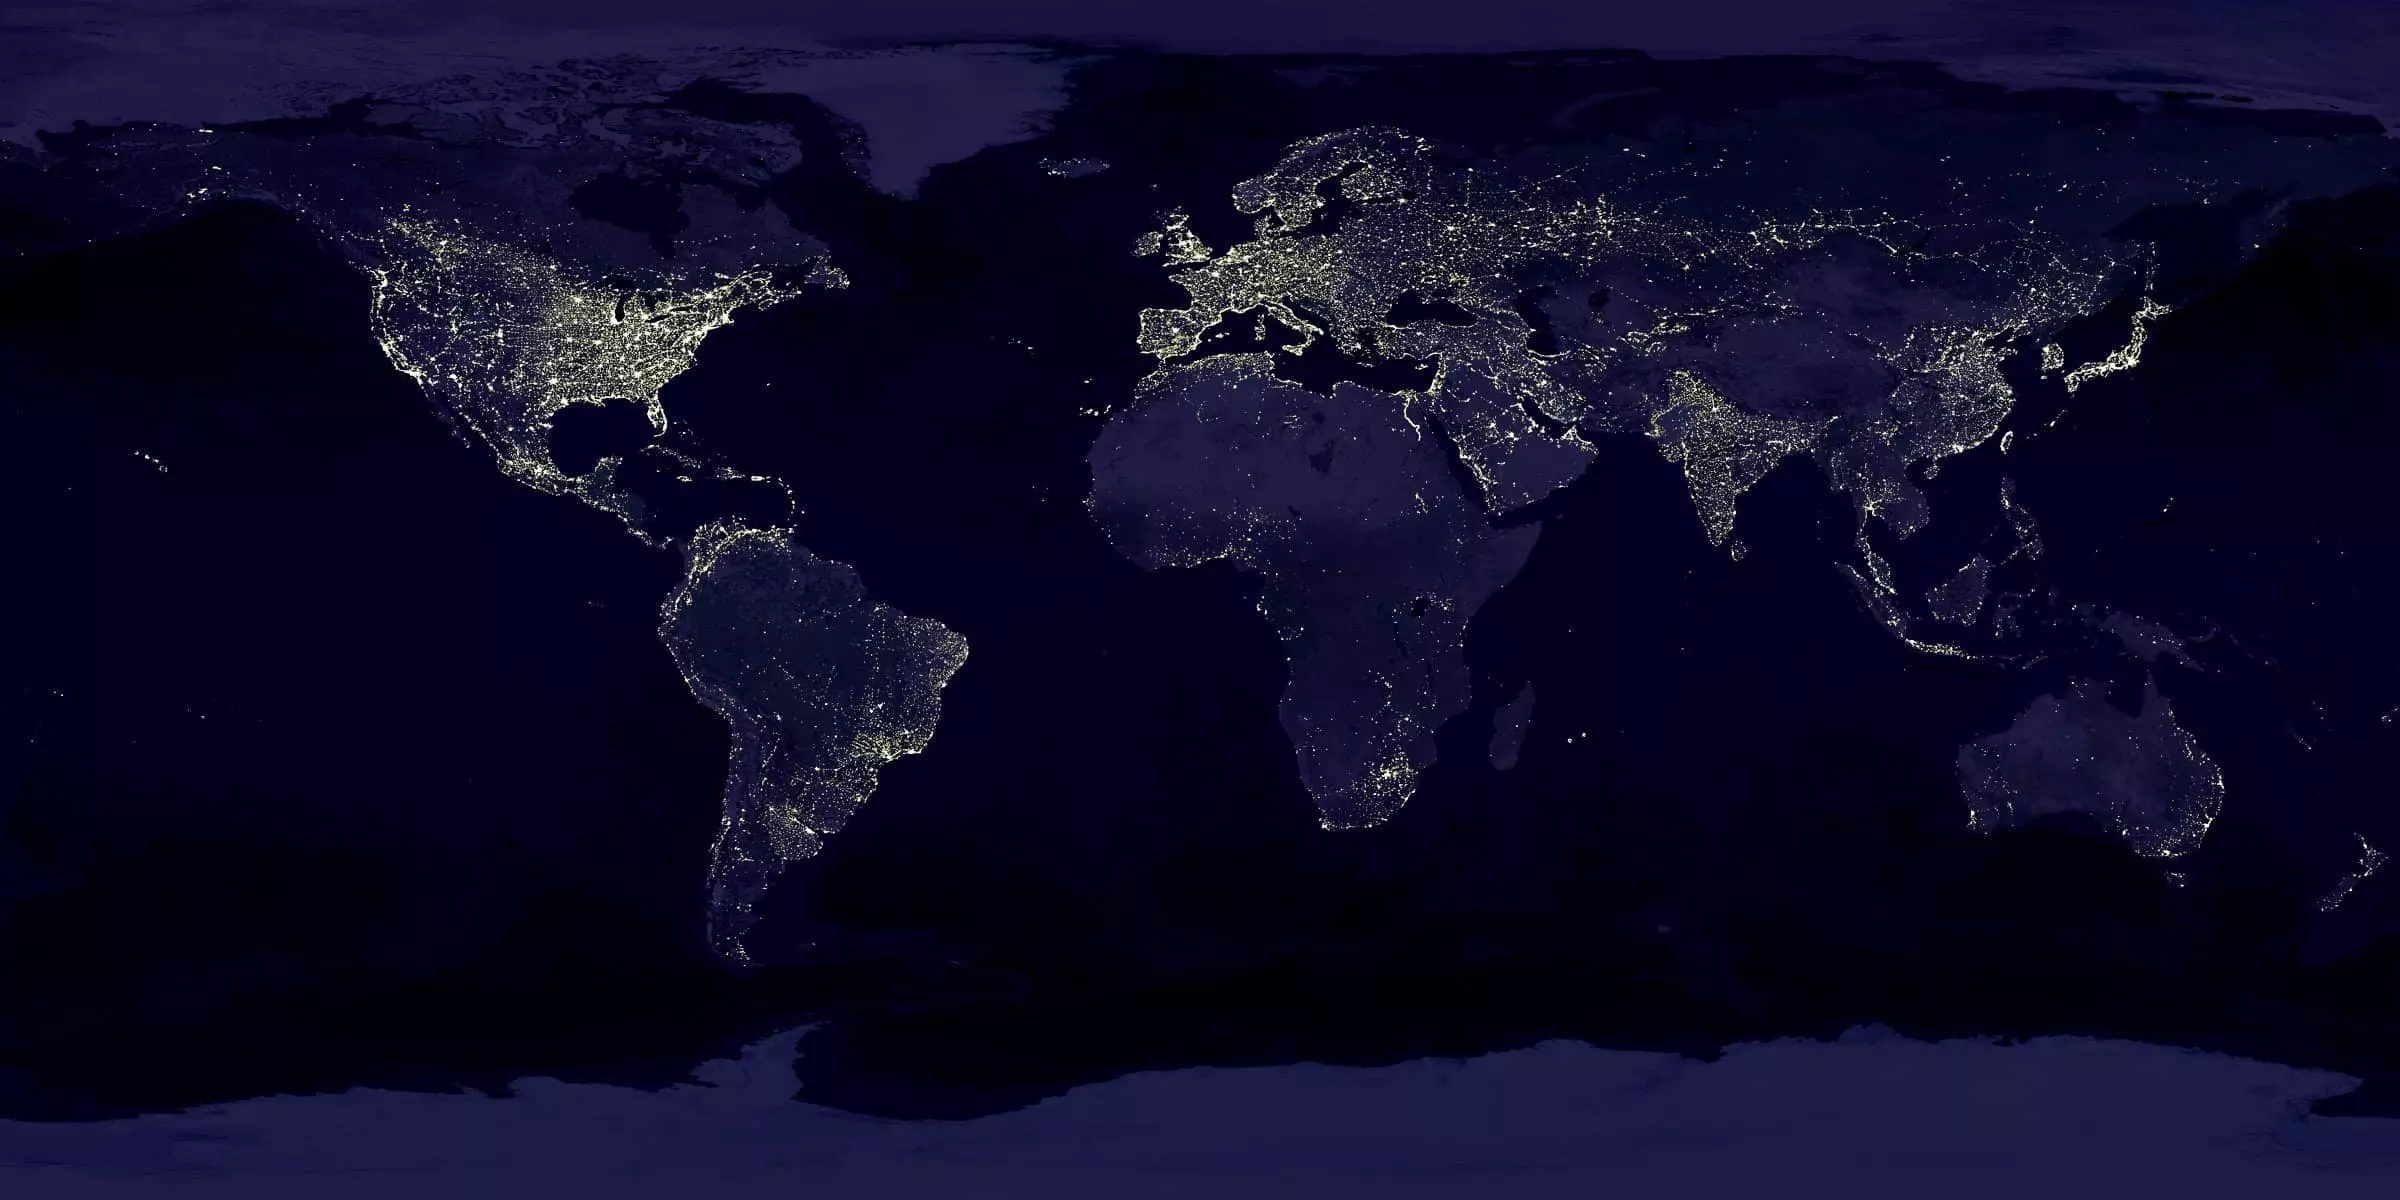 Abbild der Kontinente bei Nacht